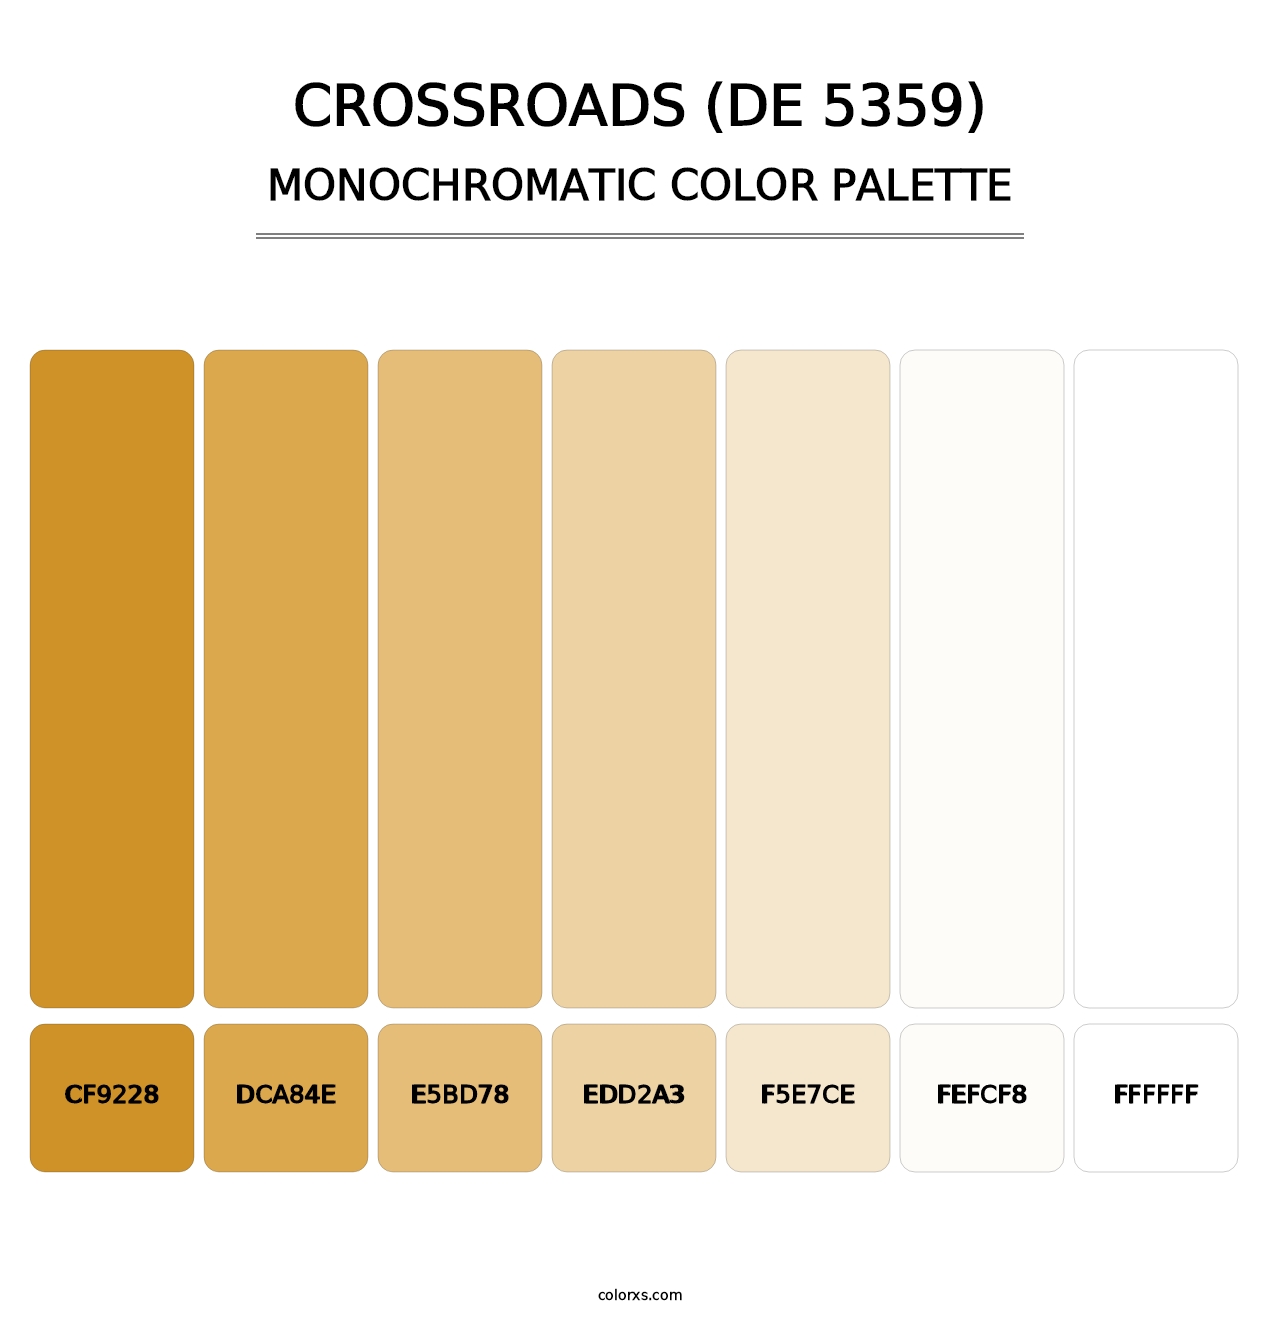 Crossroads (DE 5359) - Monochromatic Color Palette